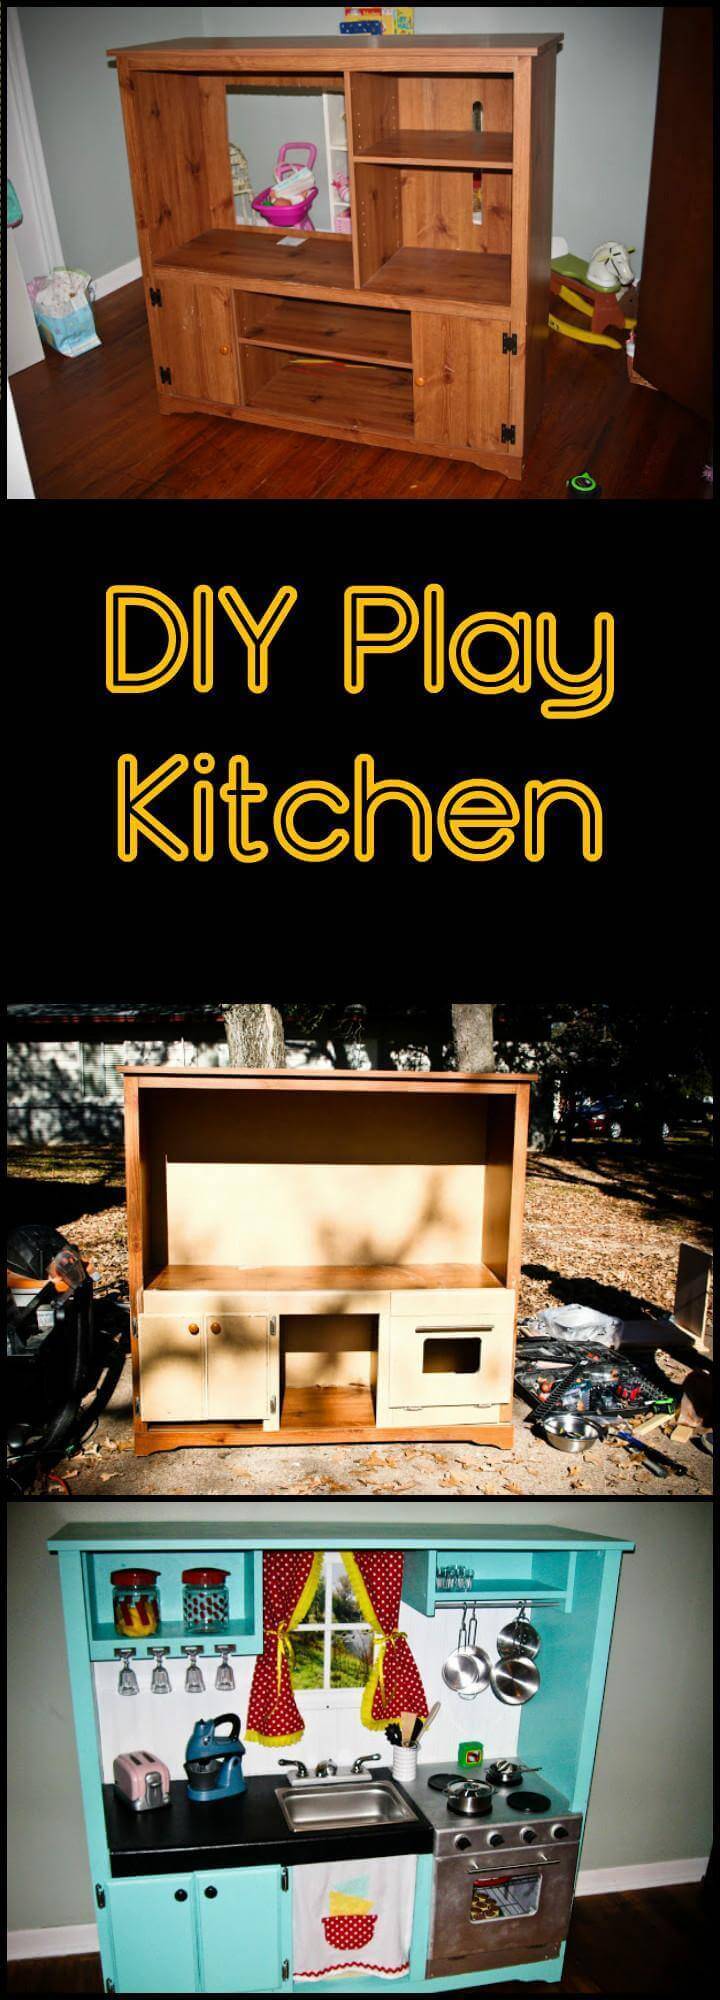 DIY play kitchen tutorial